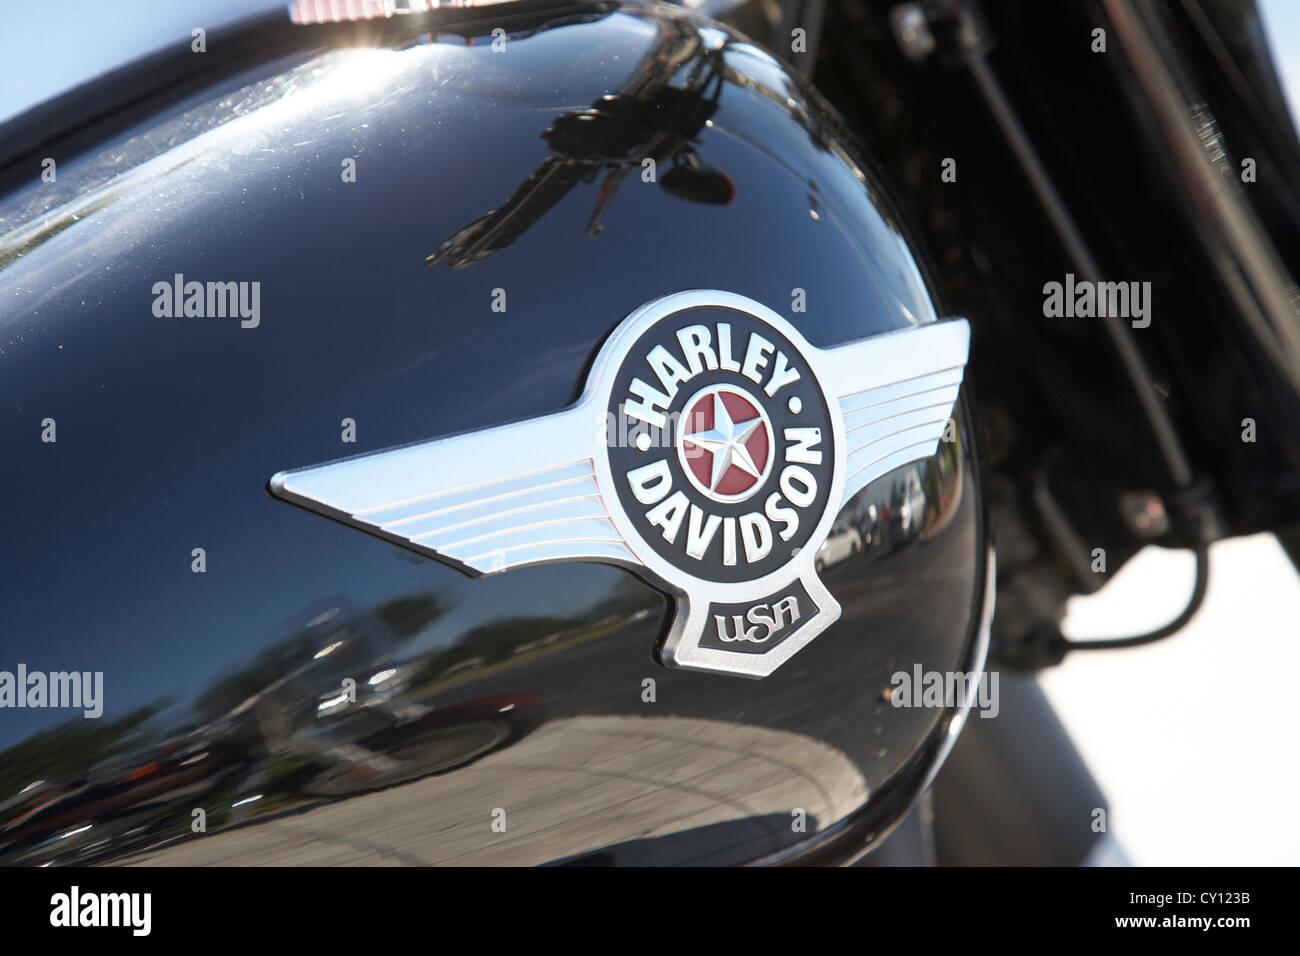 Sur le thème de l'aviation Harley Davidson fat boy sur logo star bike à Orlando la Floride Etats-Unis Banque D'Images